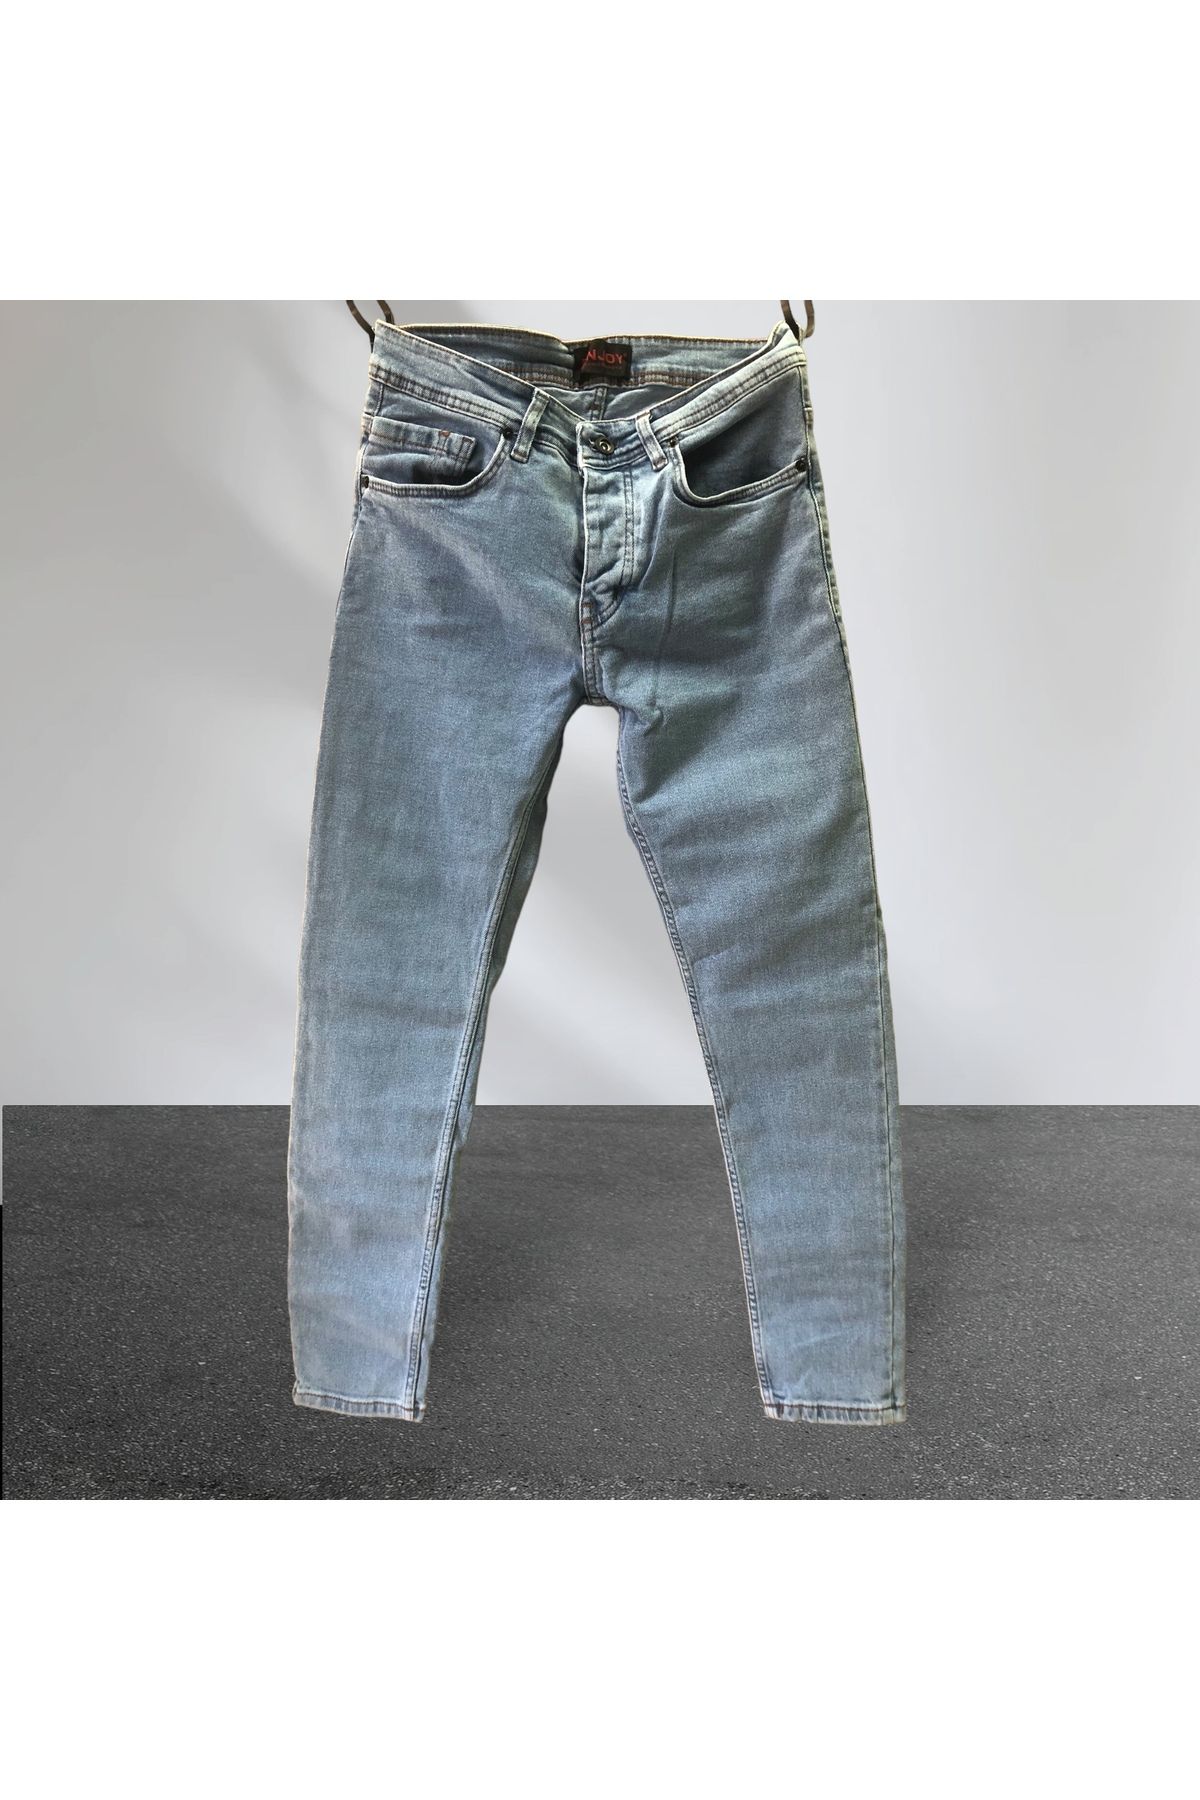 Enjoy Kot-Jeans-Slim Fit-Ligralı-Düğmeli -Pantalon